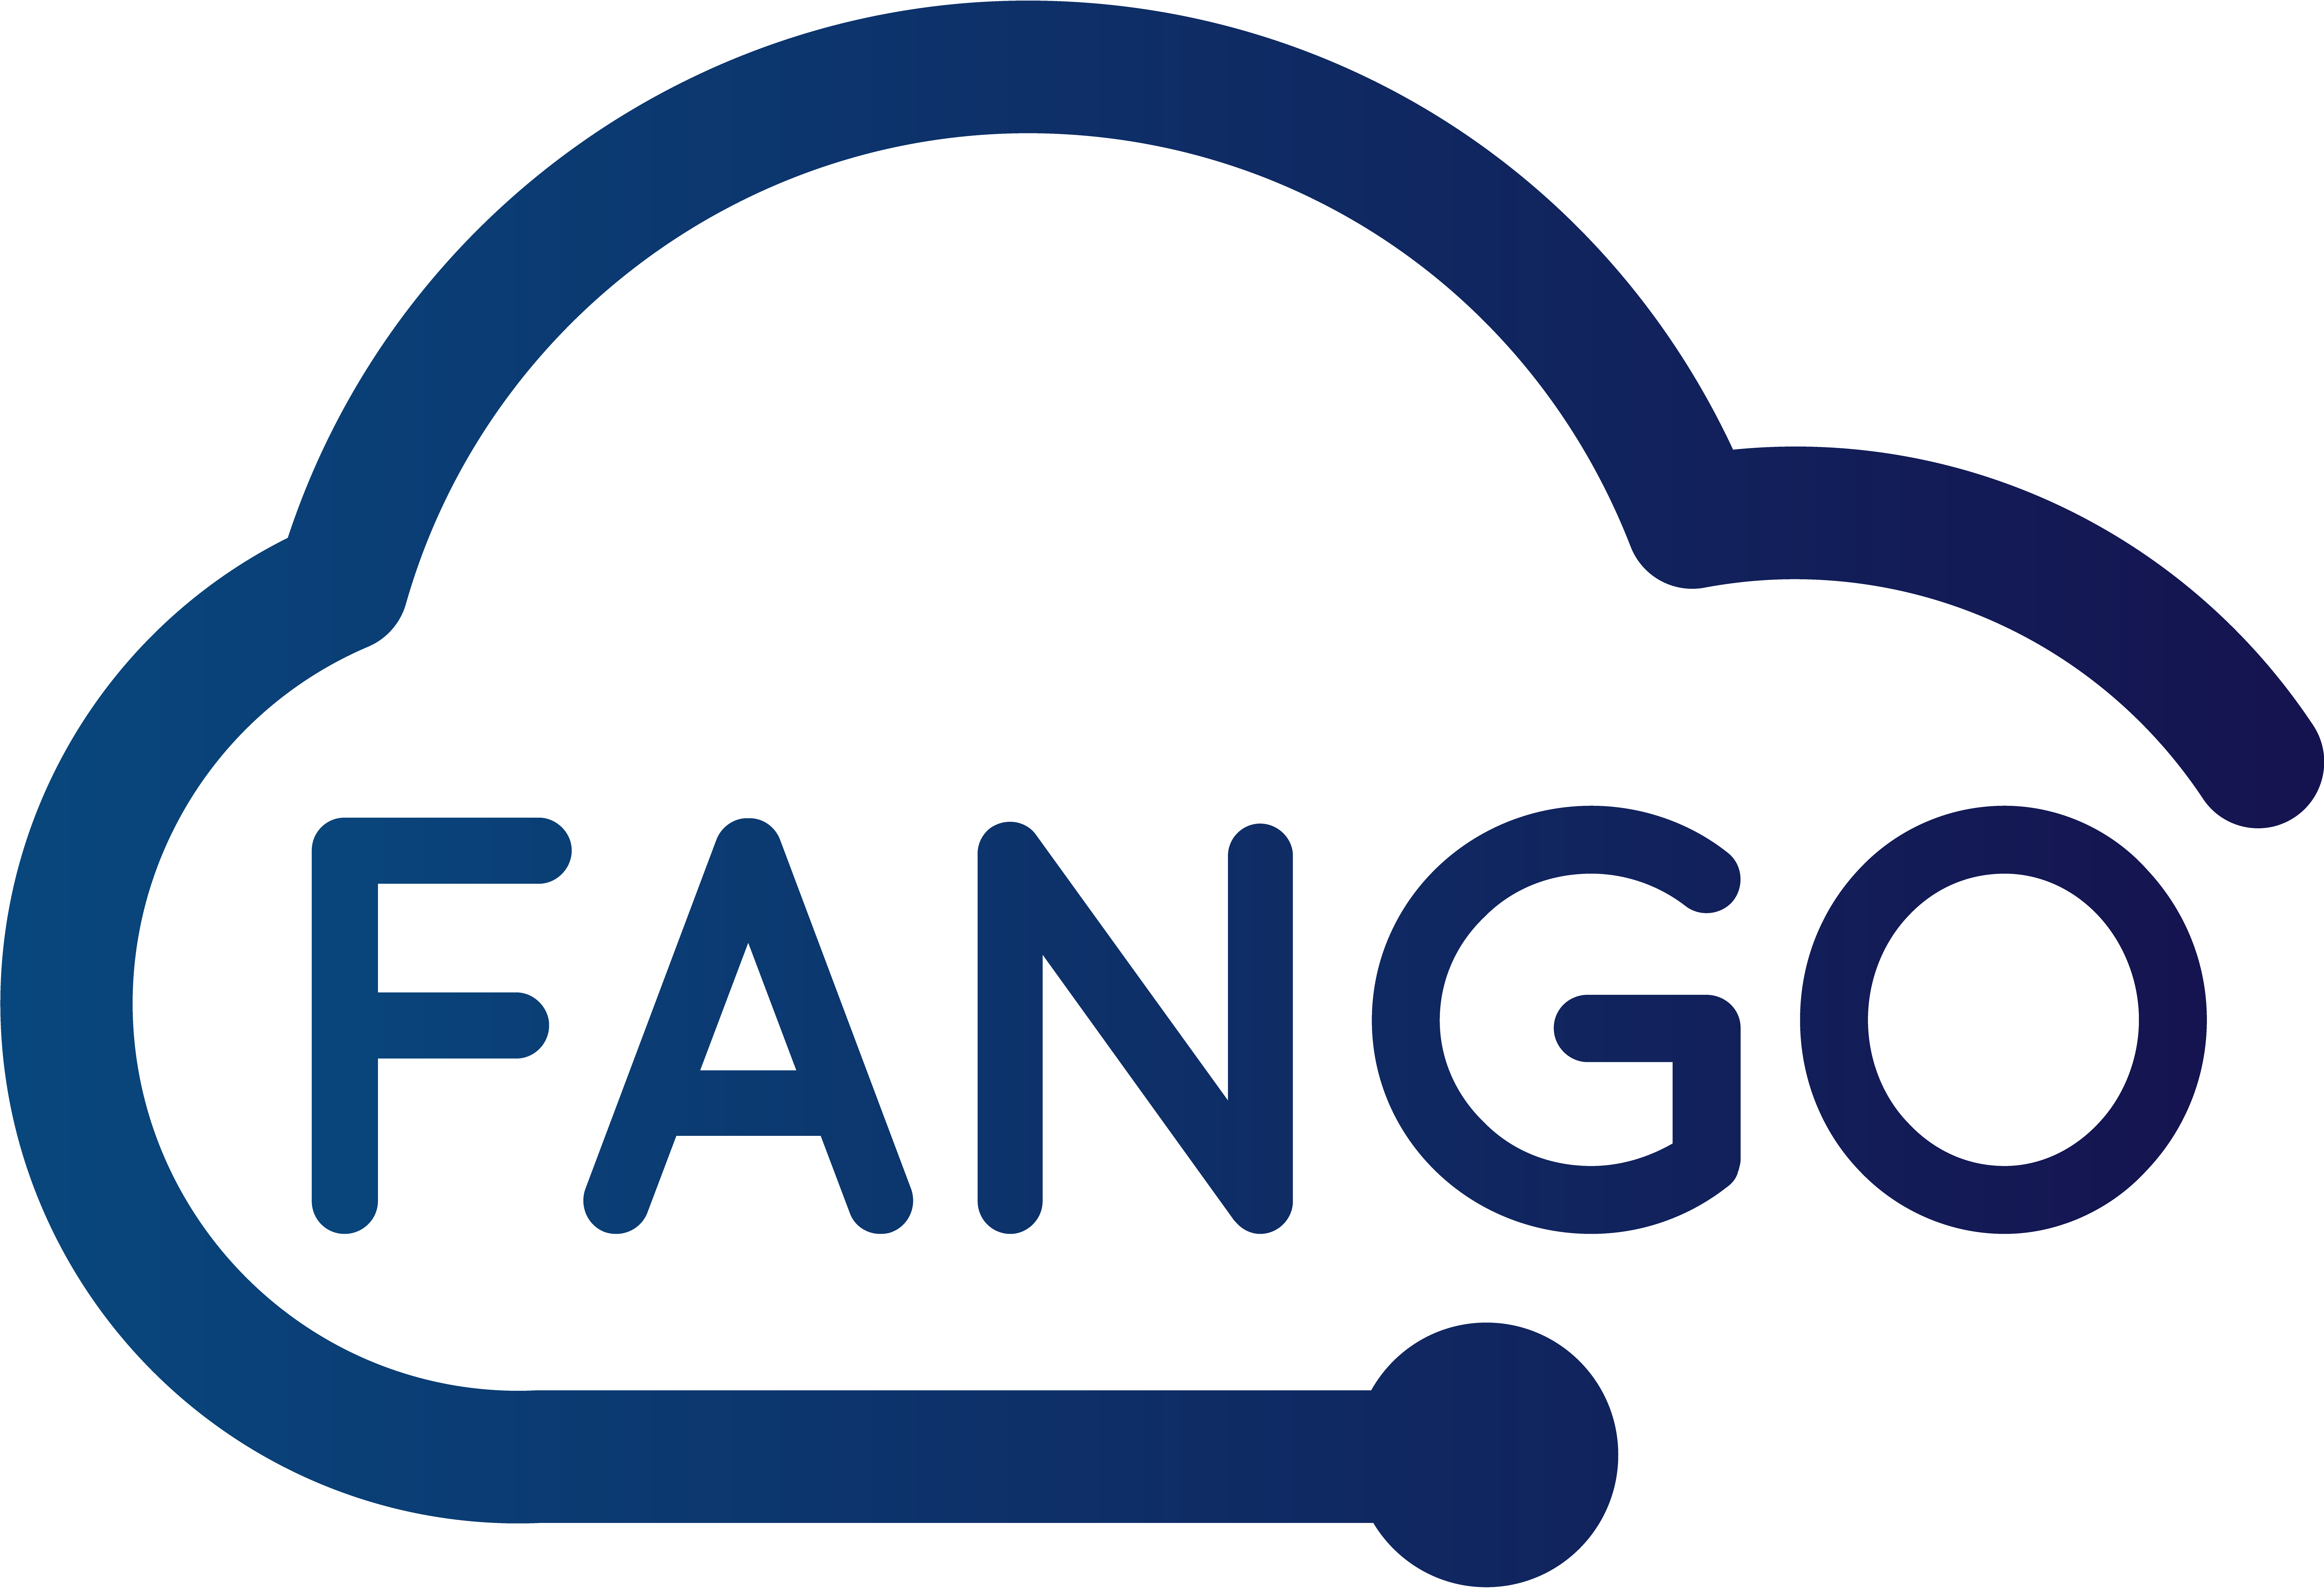 FanGo 